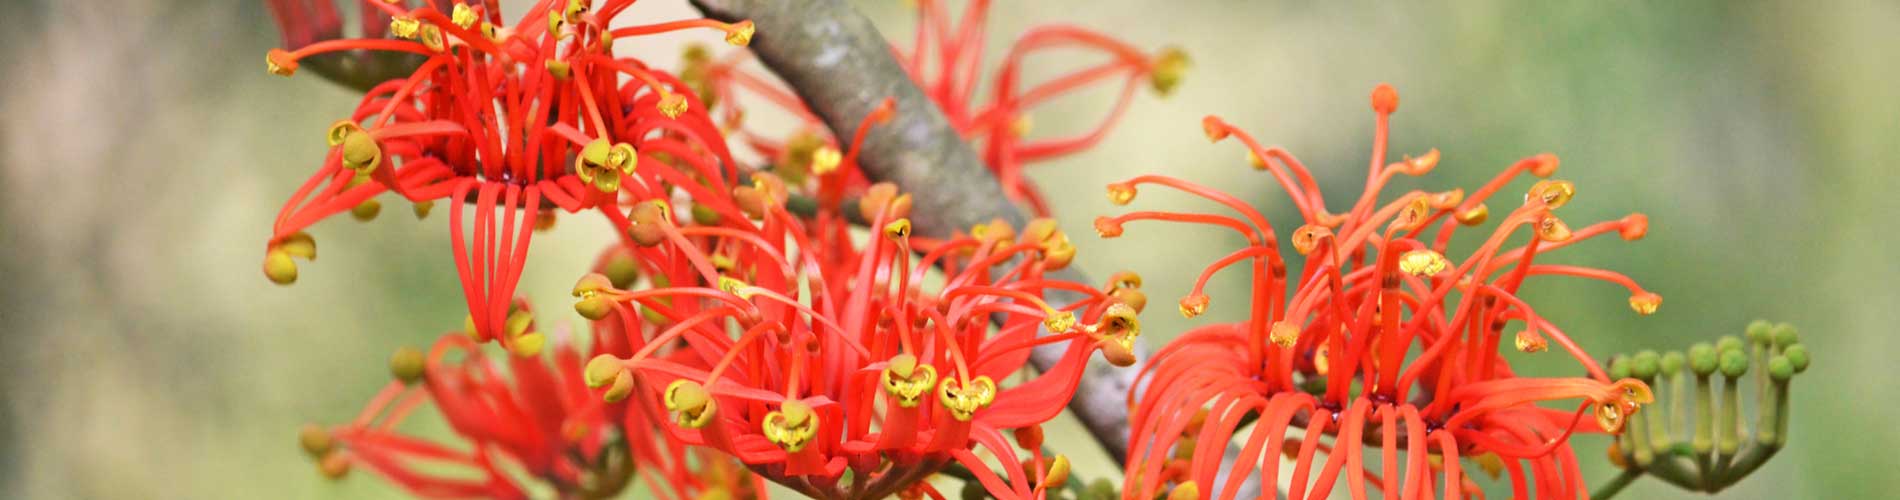 Australischer Feuerradbaum - Gartenblog